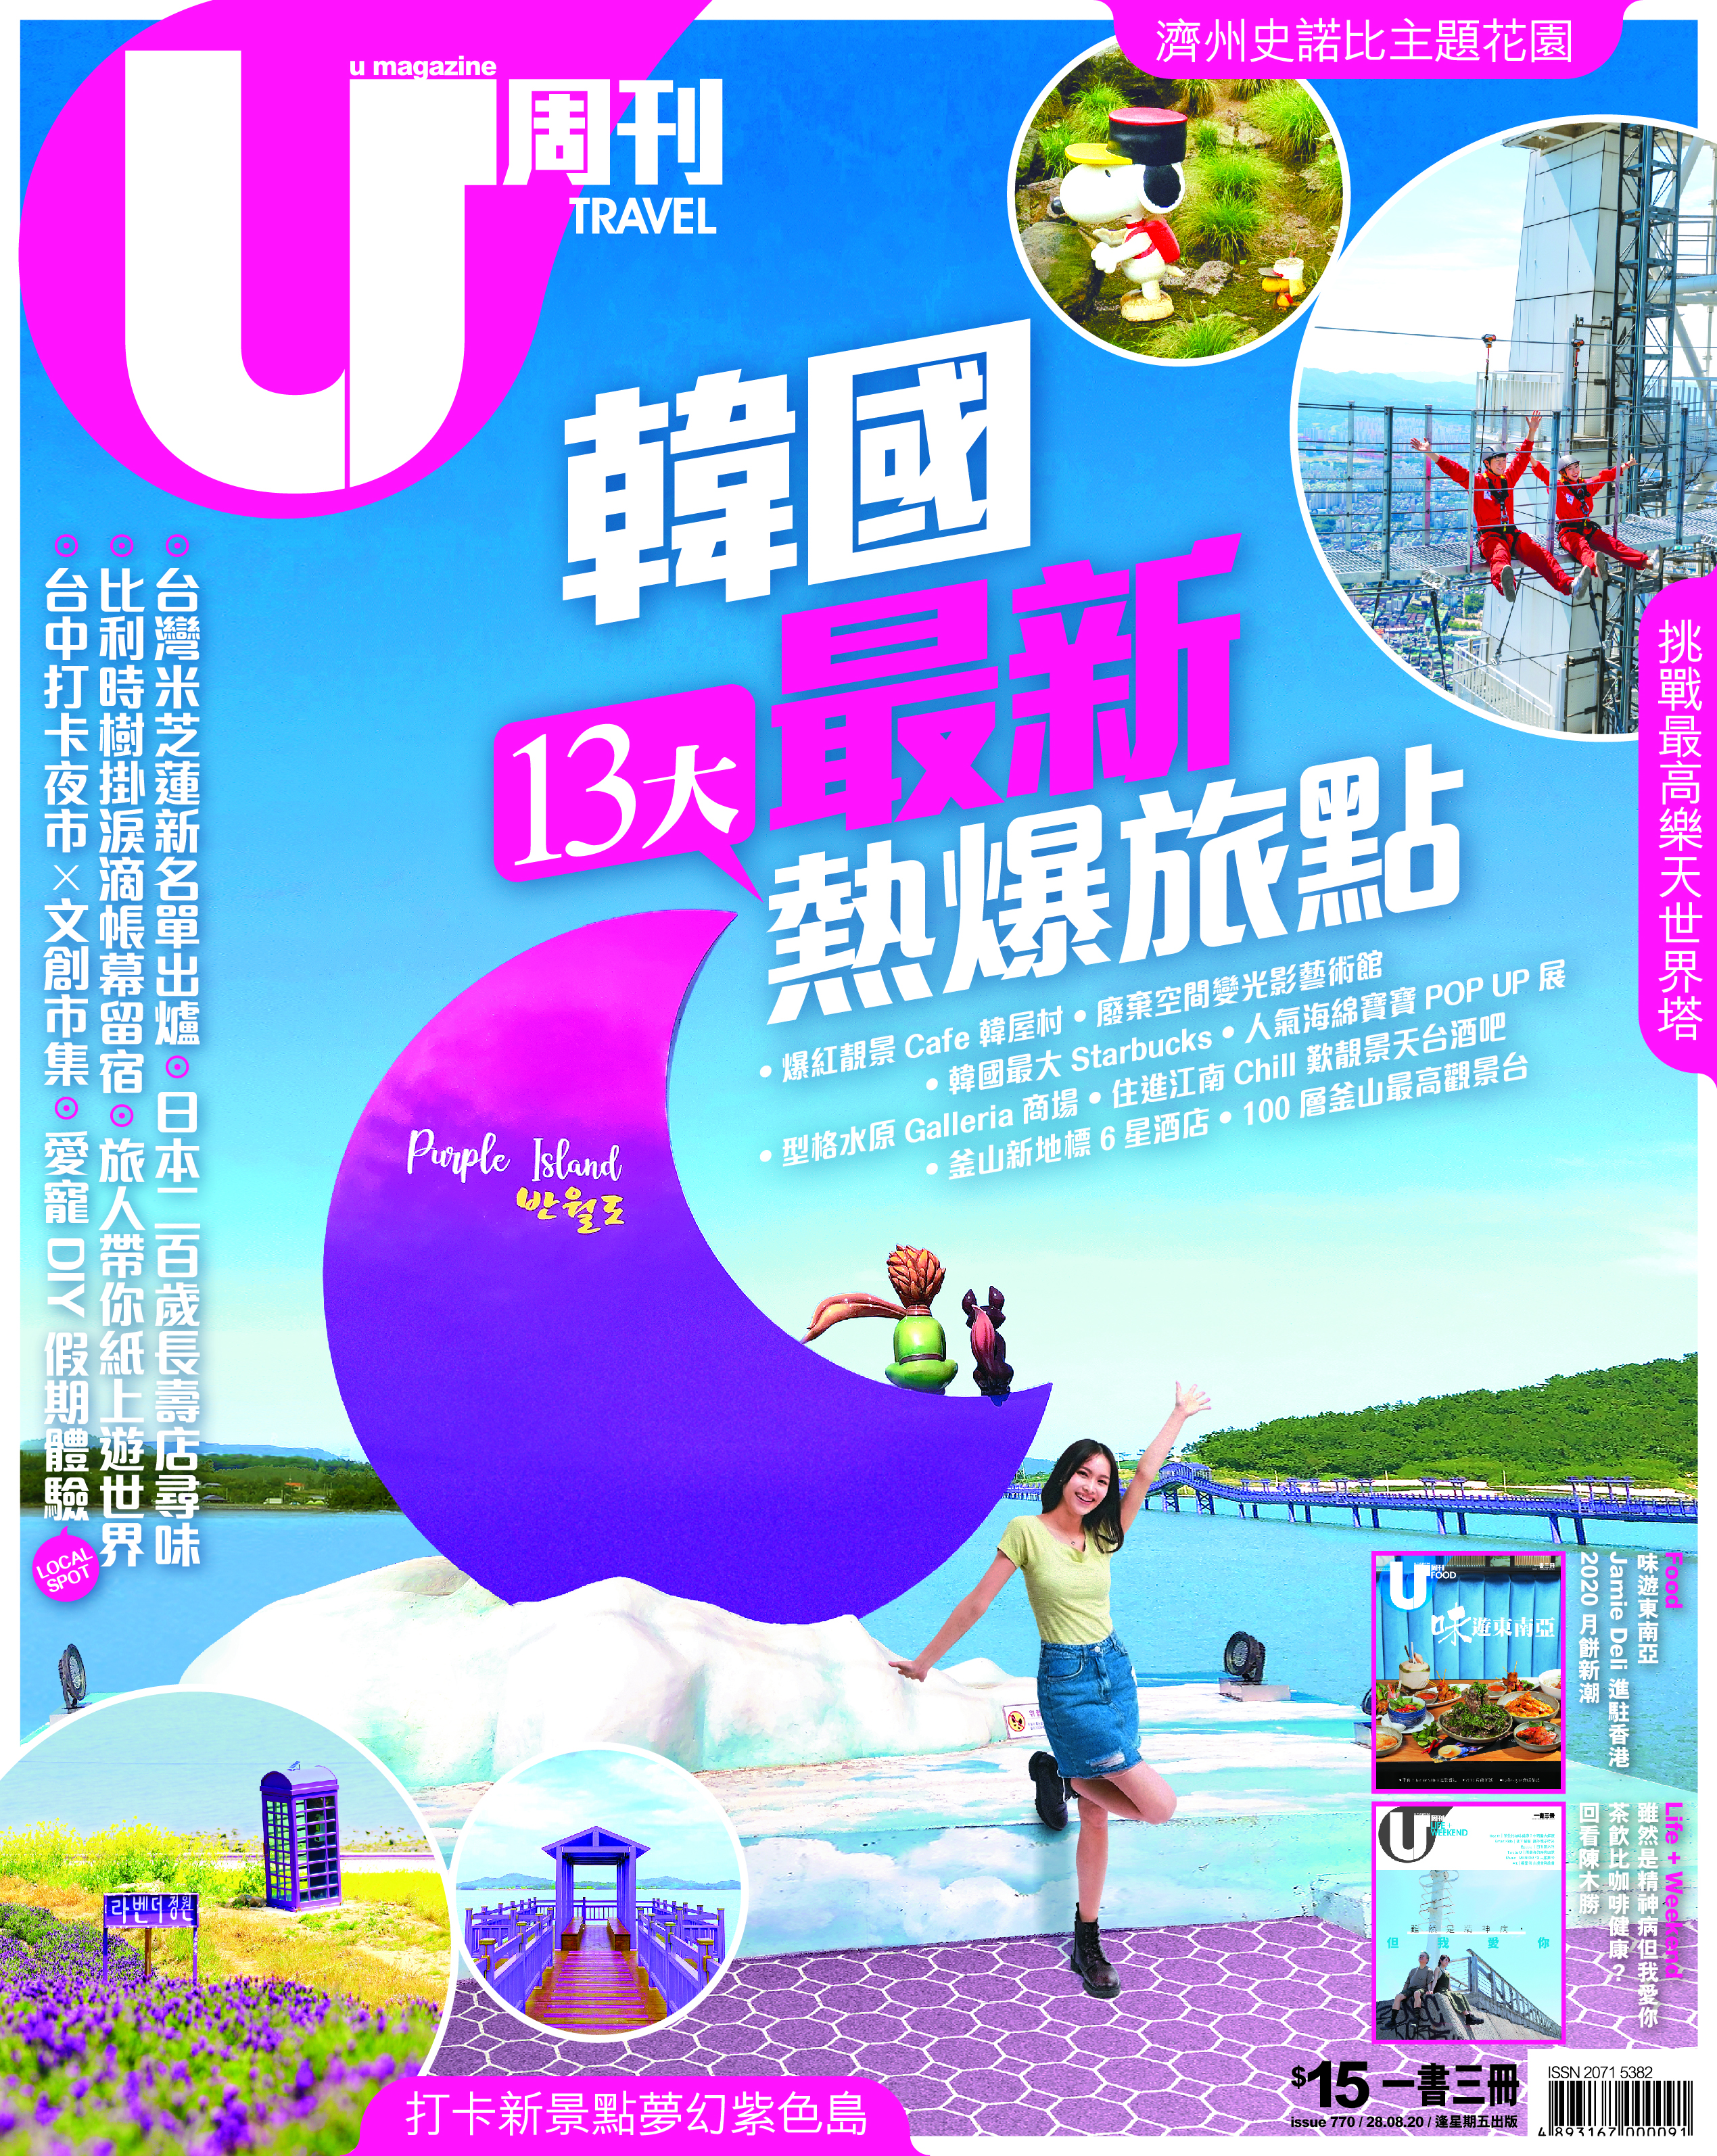 홍콩의 유명 여행 잡지 ‘유 매거진’이 한국의 여행지를 찾는 기획특집으로 신안의 퍼플섬을 핫한 여행지로 표지 기사를 통해 소개해 관심을 끌고 있다. 사진은 U magazine 표지 